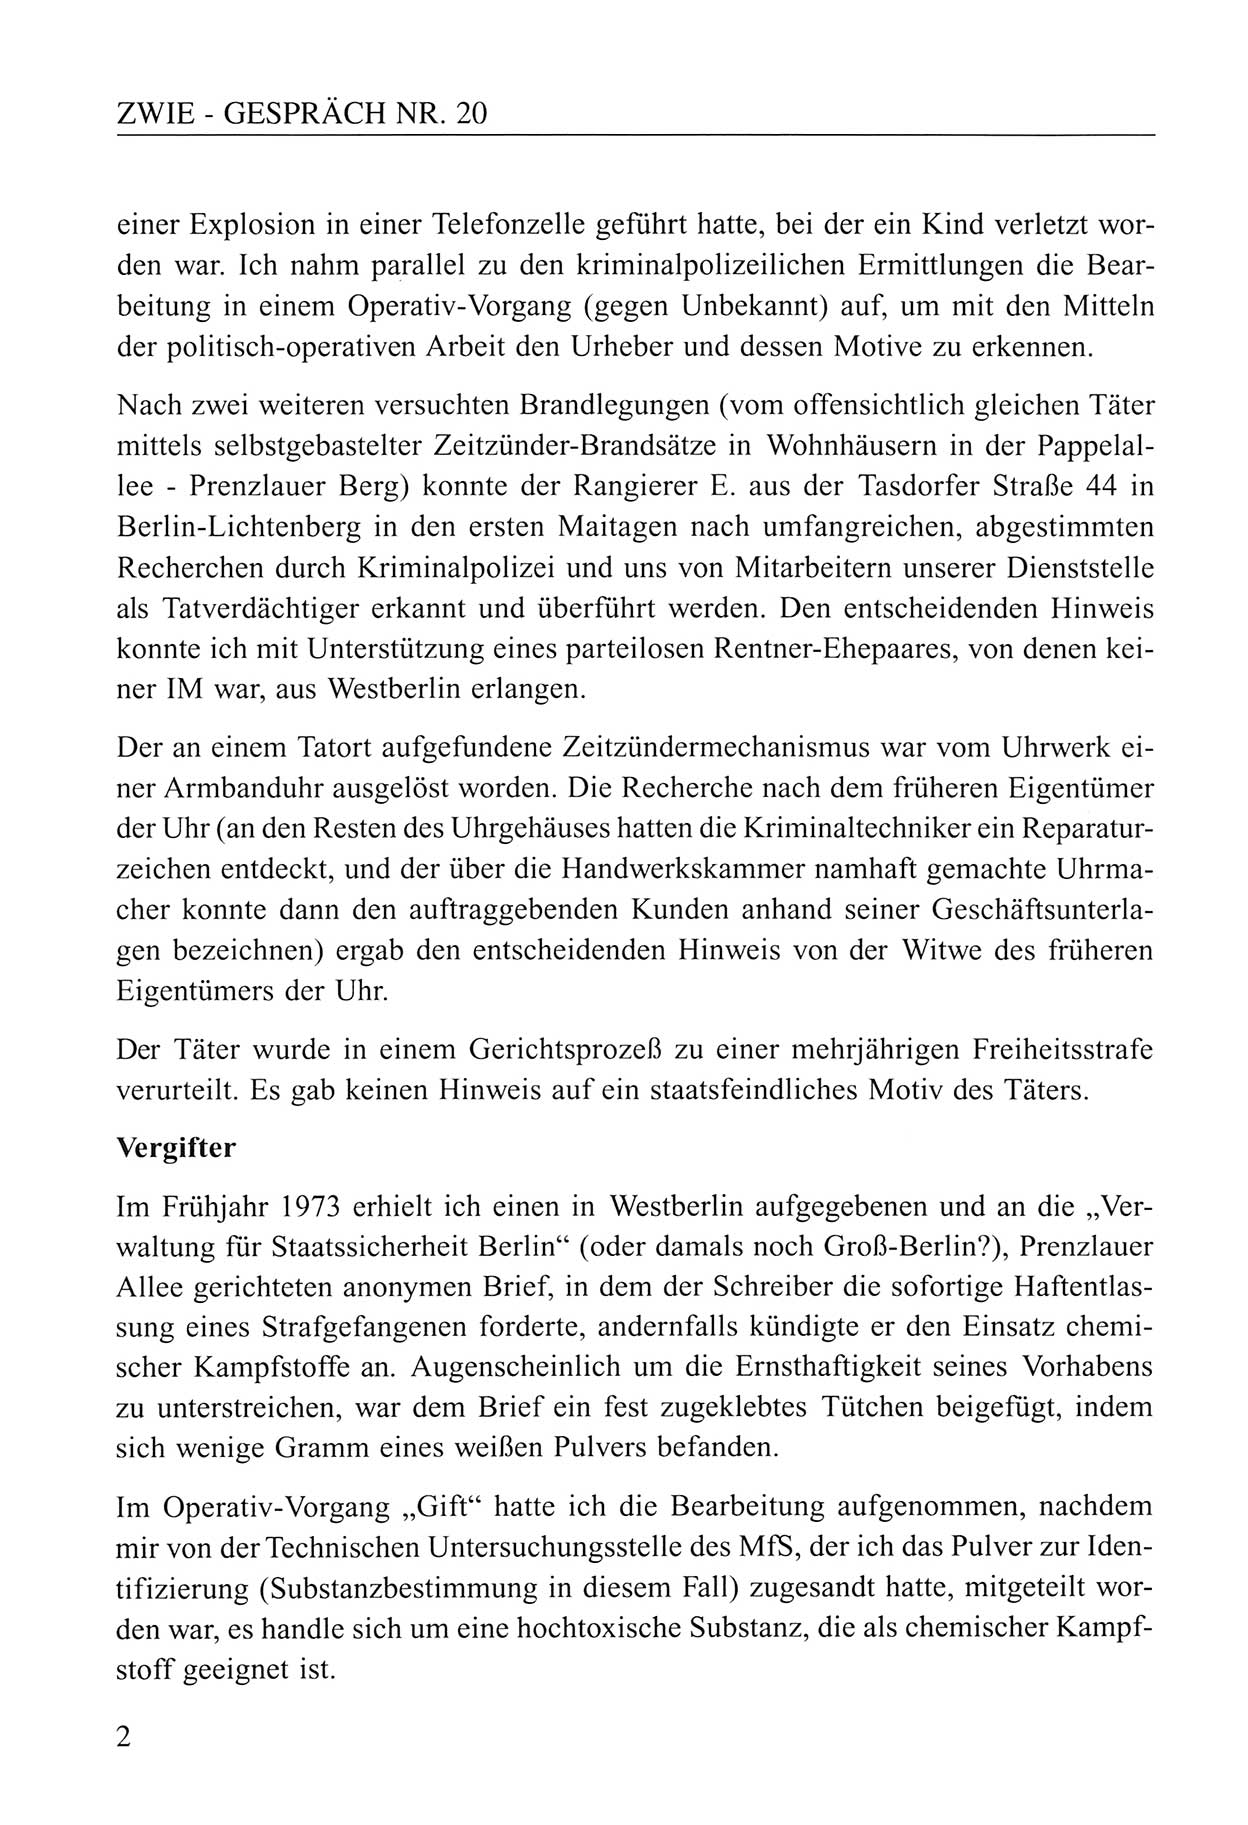 Zwie-Gespräch, Beiträge zum Umgang mit der Staatssicherheits-Vergangenheit [Deutsche Demokratische Republik (DDR)], Ausgabe Nr. 20, Berlin 1994, Seite 2 (Zwie-Gespr. Ausg. 20 1994, S. 2)